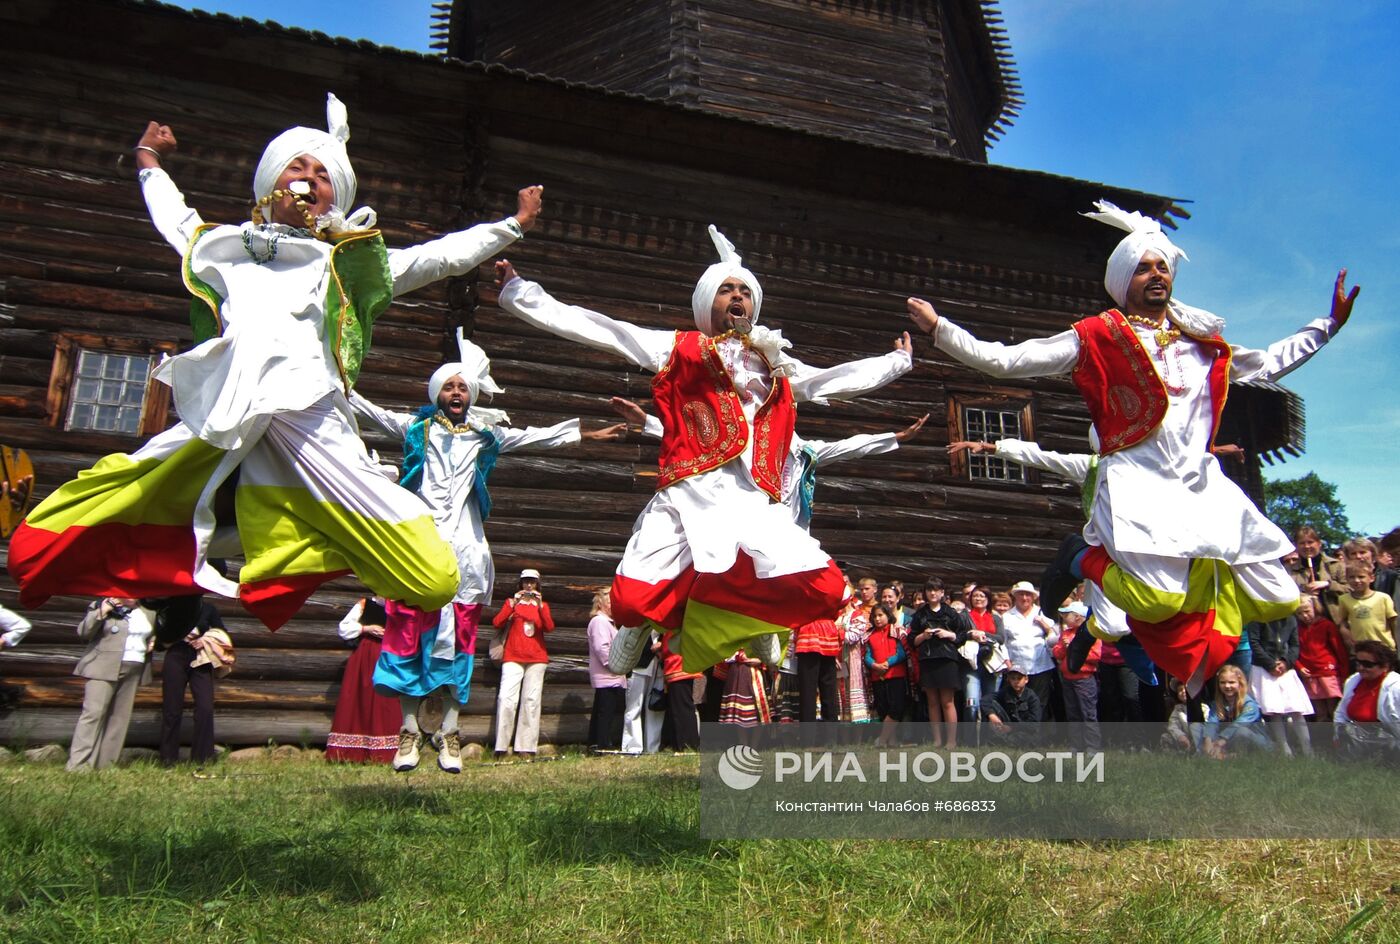 IX Международный фестиваль народного искусства и ремёсел "Садко"